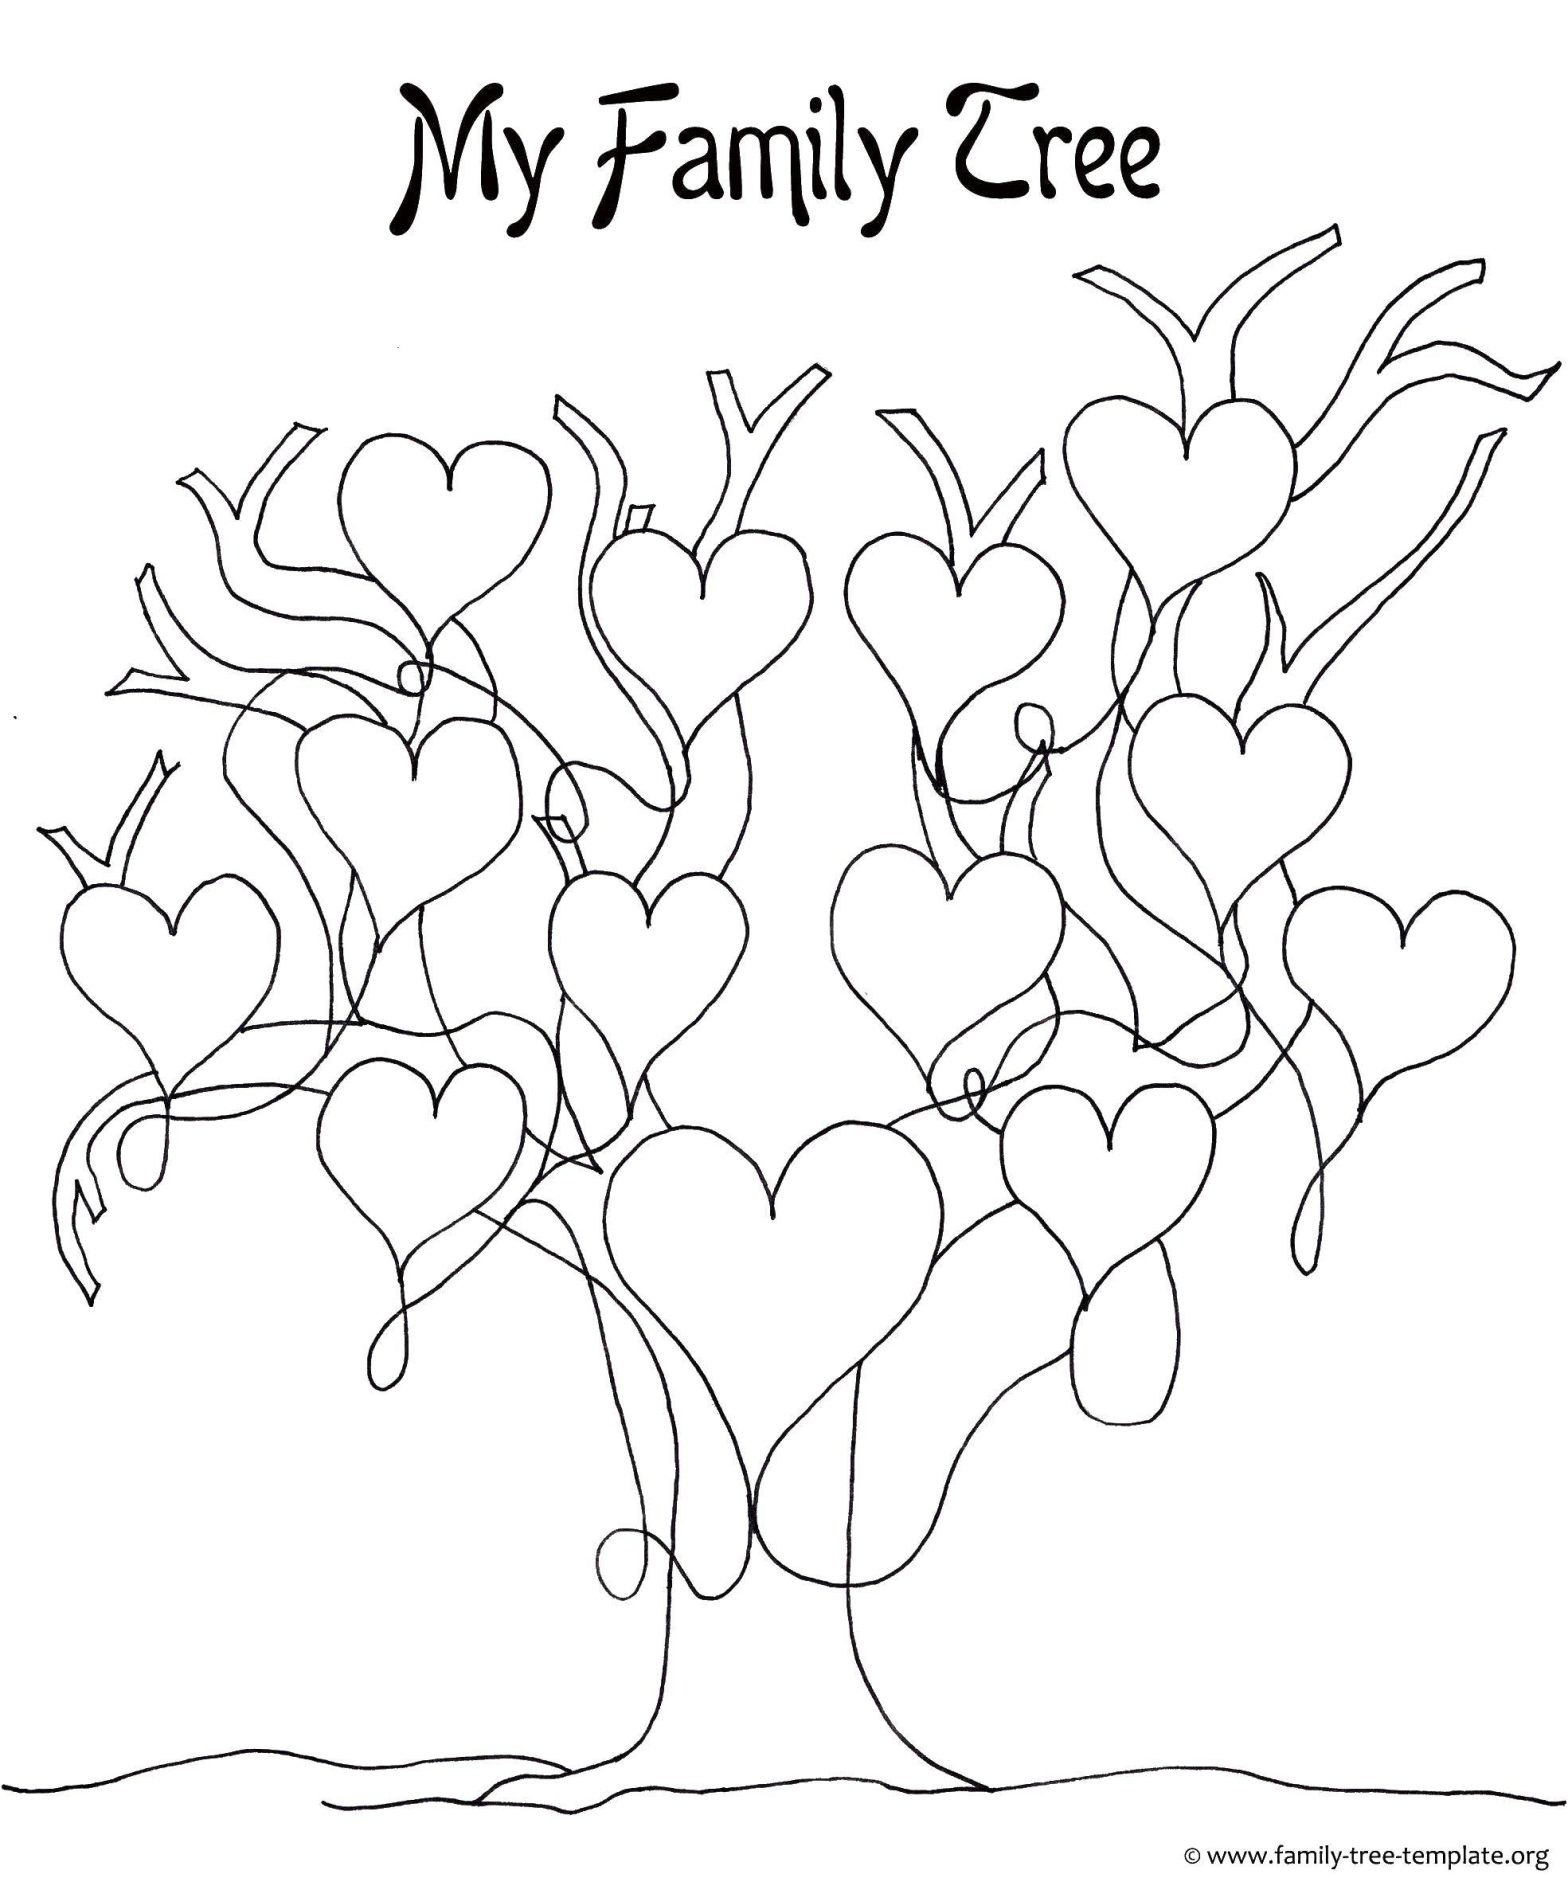 Раскраска Семейное дерево с сердечками для детей (сердечки)